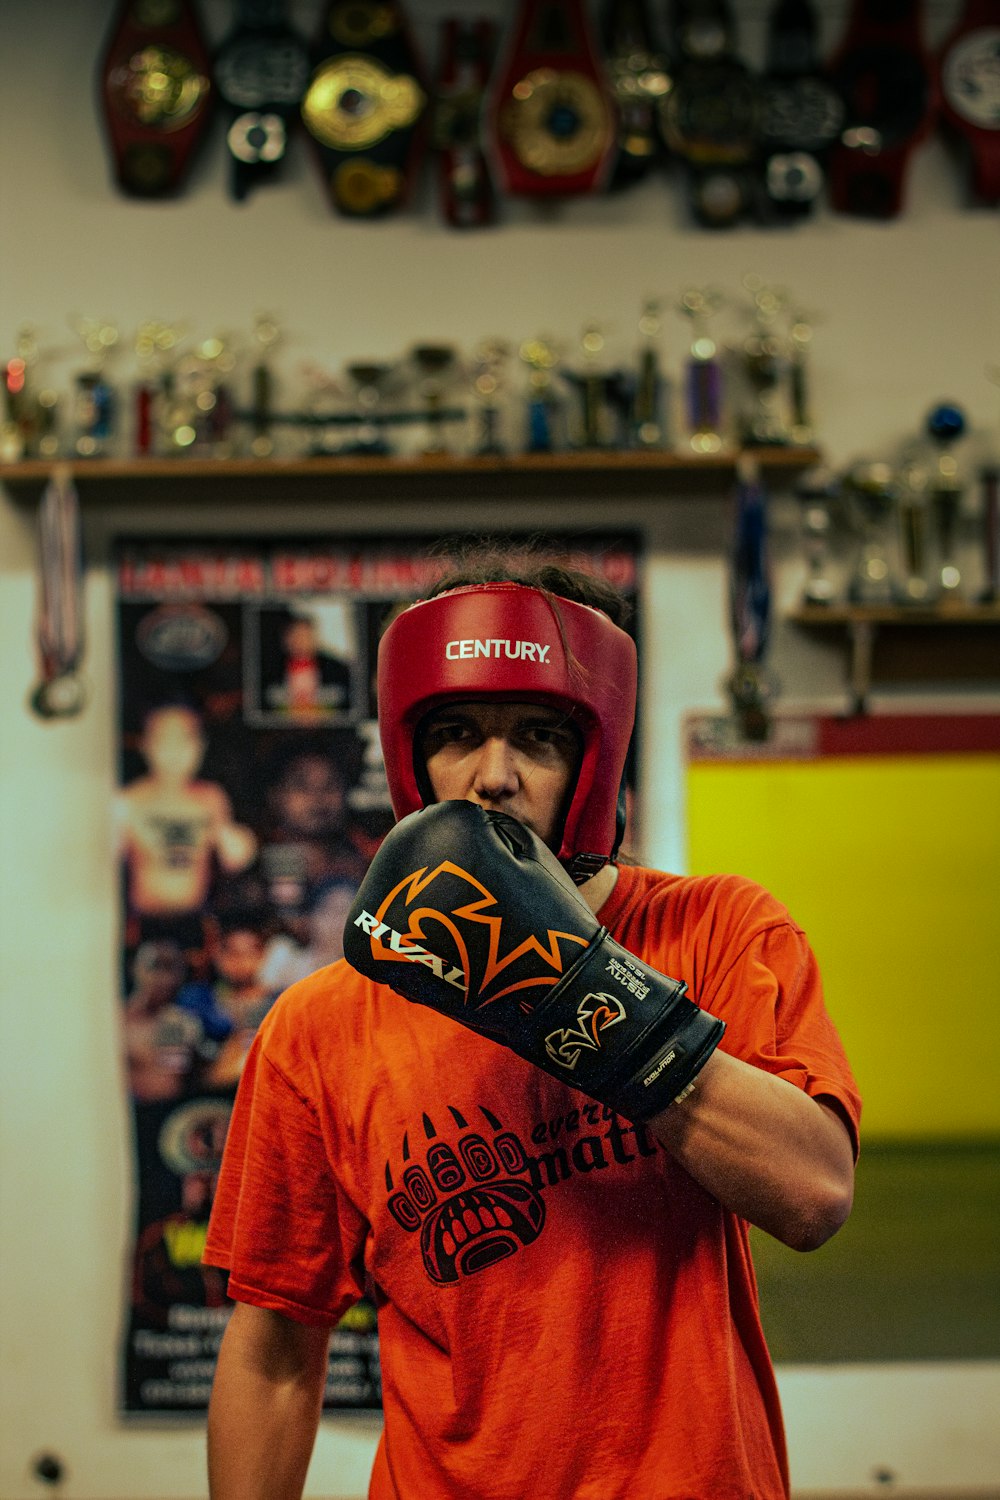 Un homme portant un casque rouge et des gants de boxe